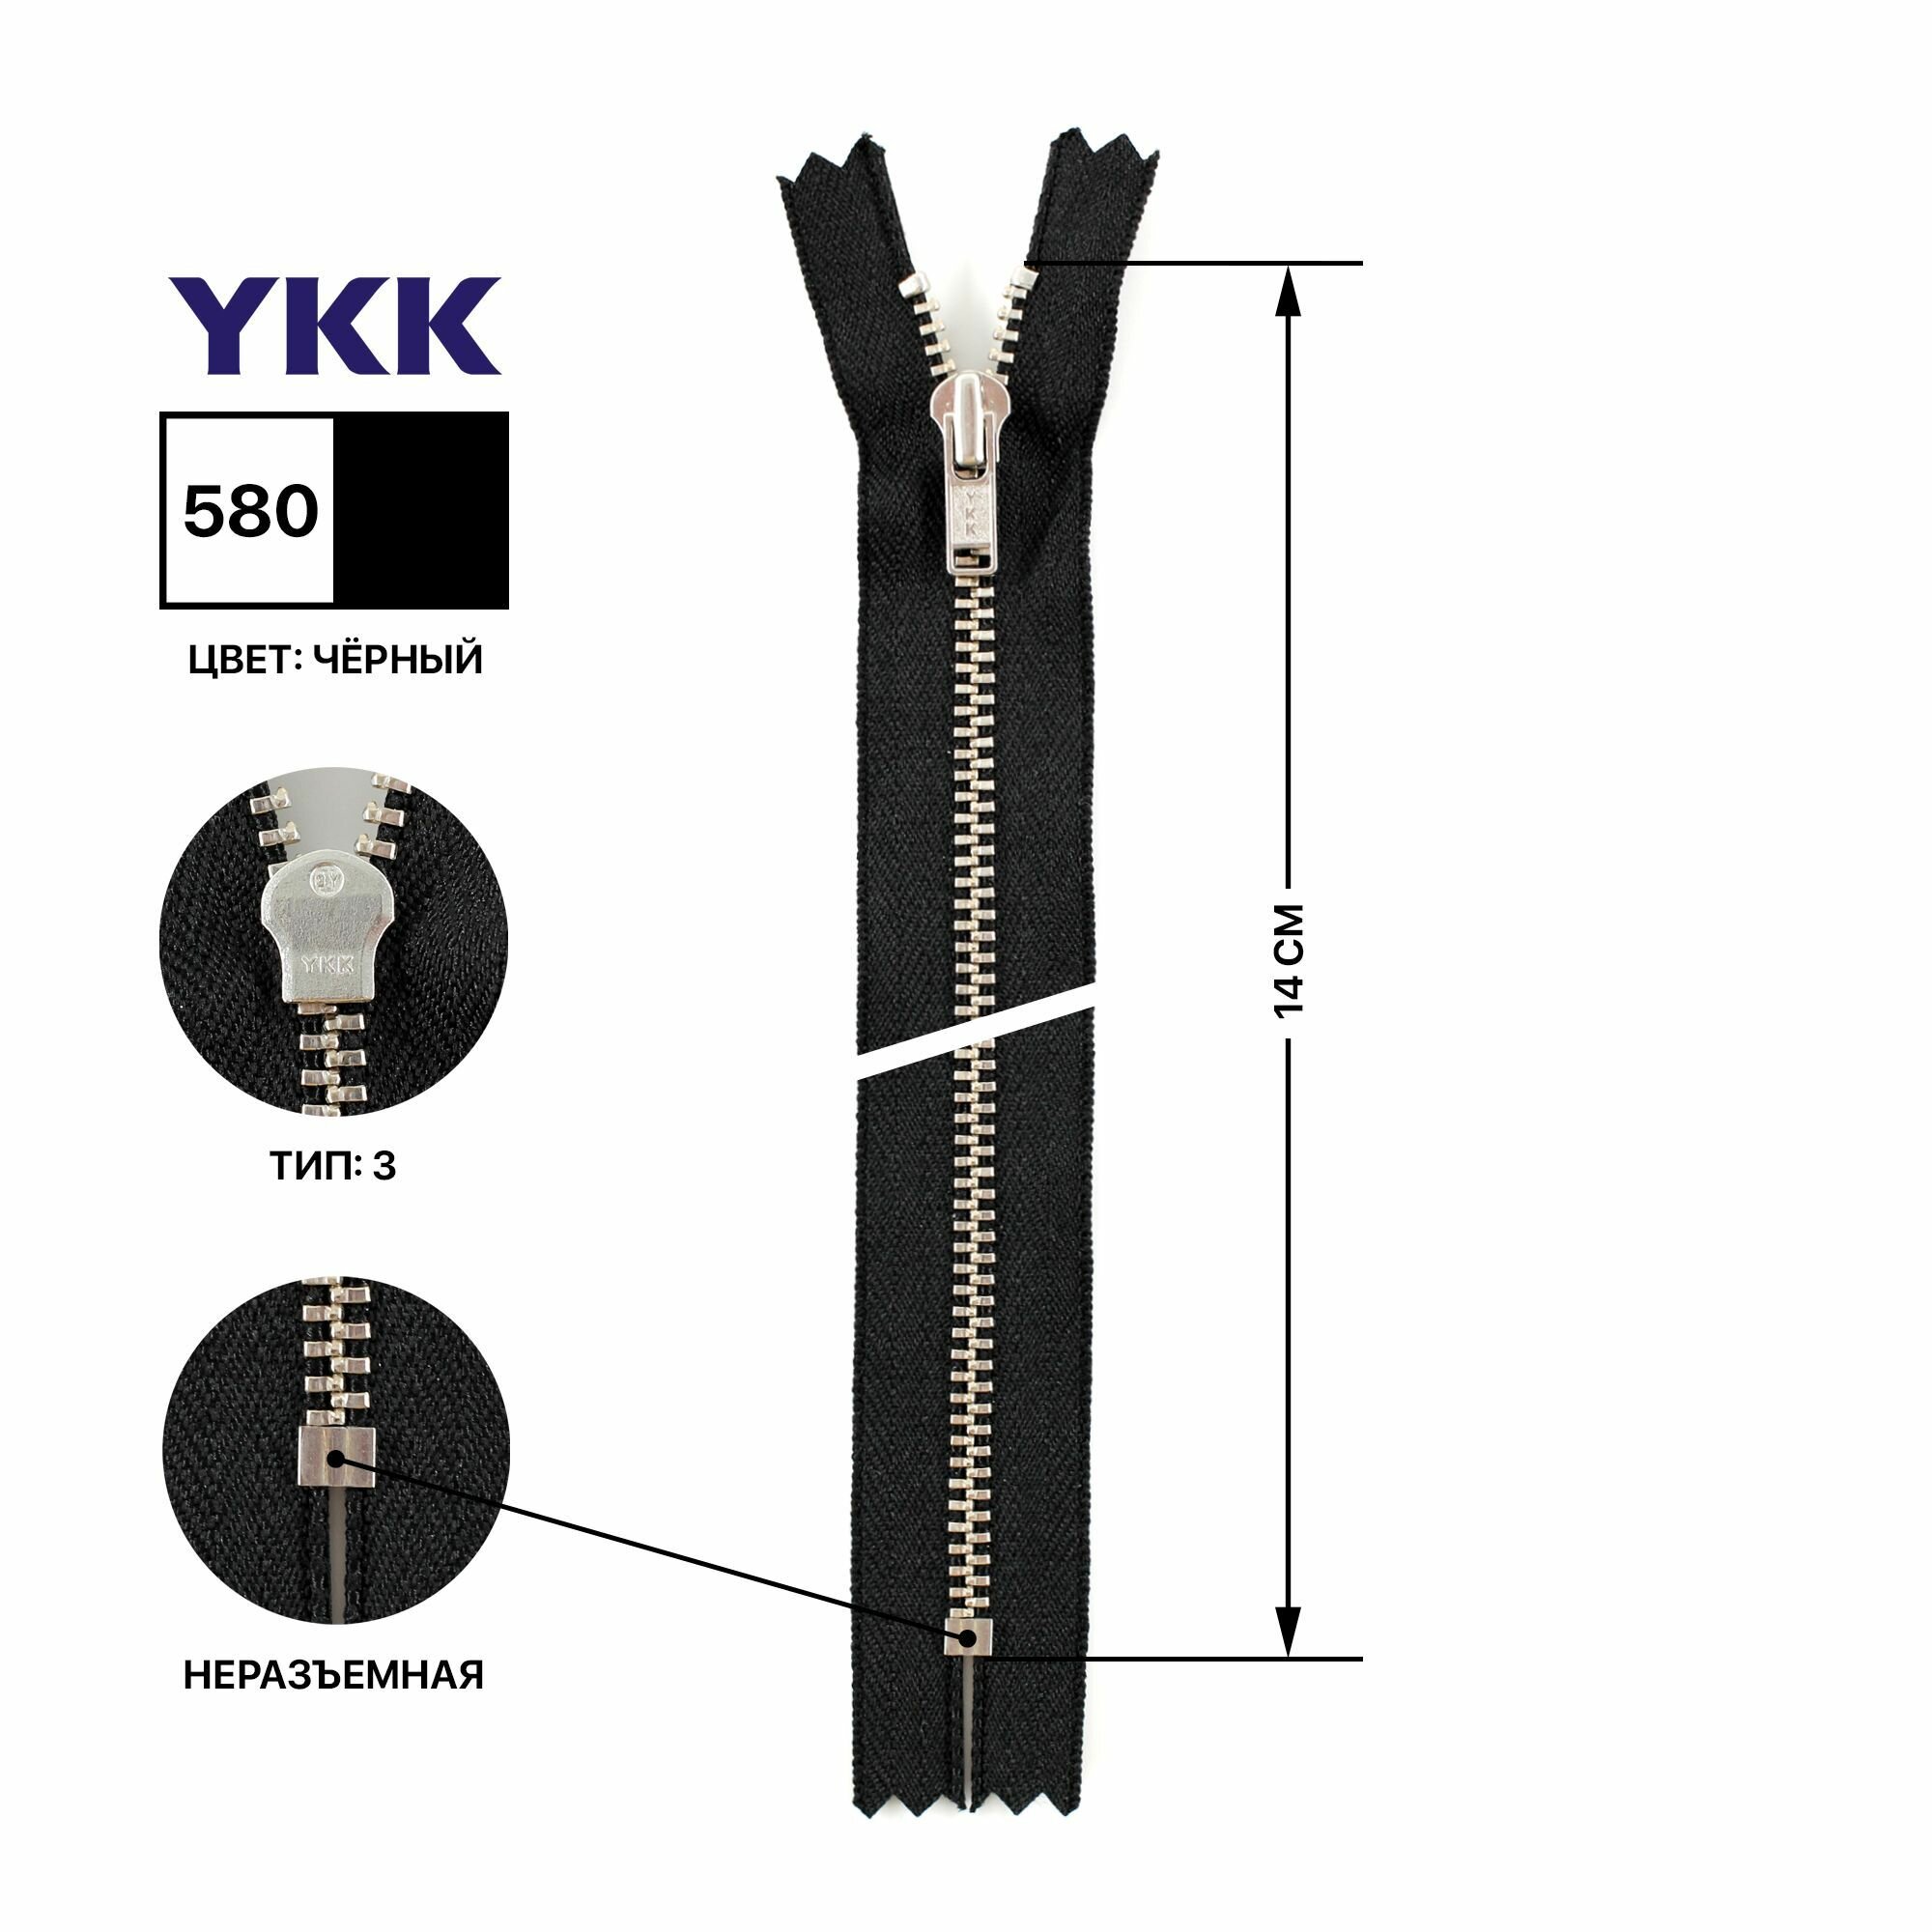 Молния YKK металлическая, цвет анти-никель, тип 3, неразъемная, длина 14 см, цвет тесьмы черный, 580